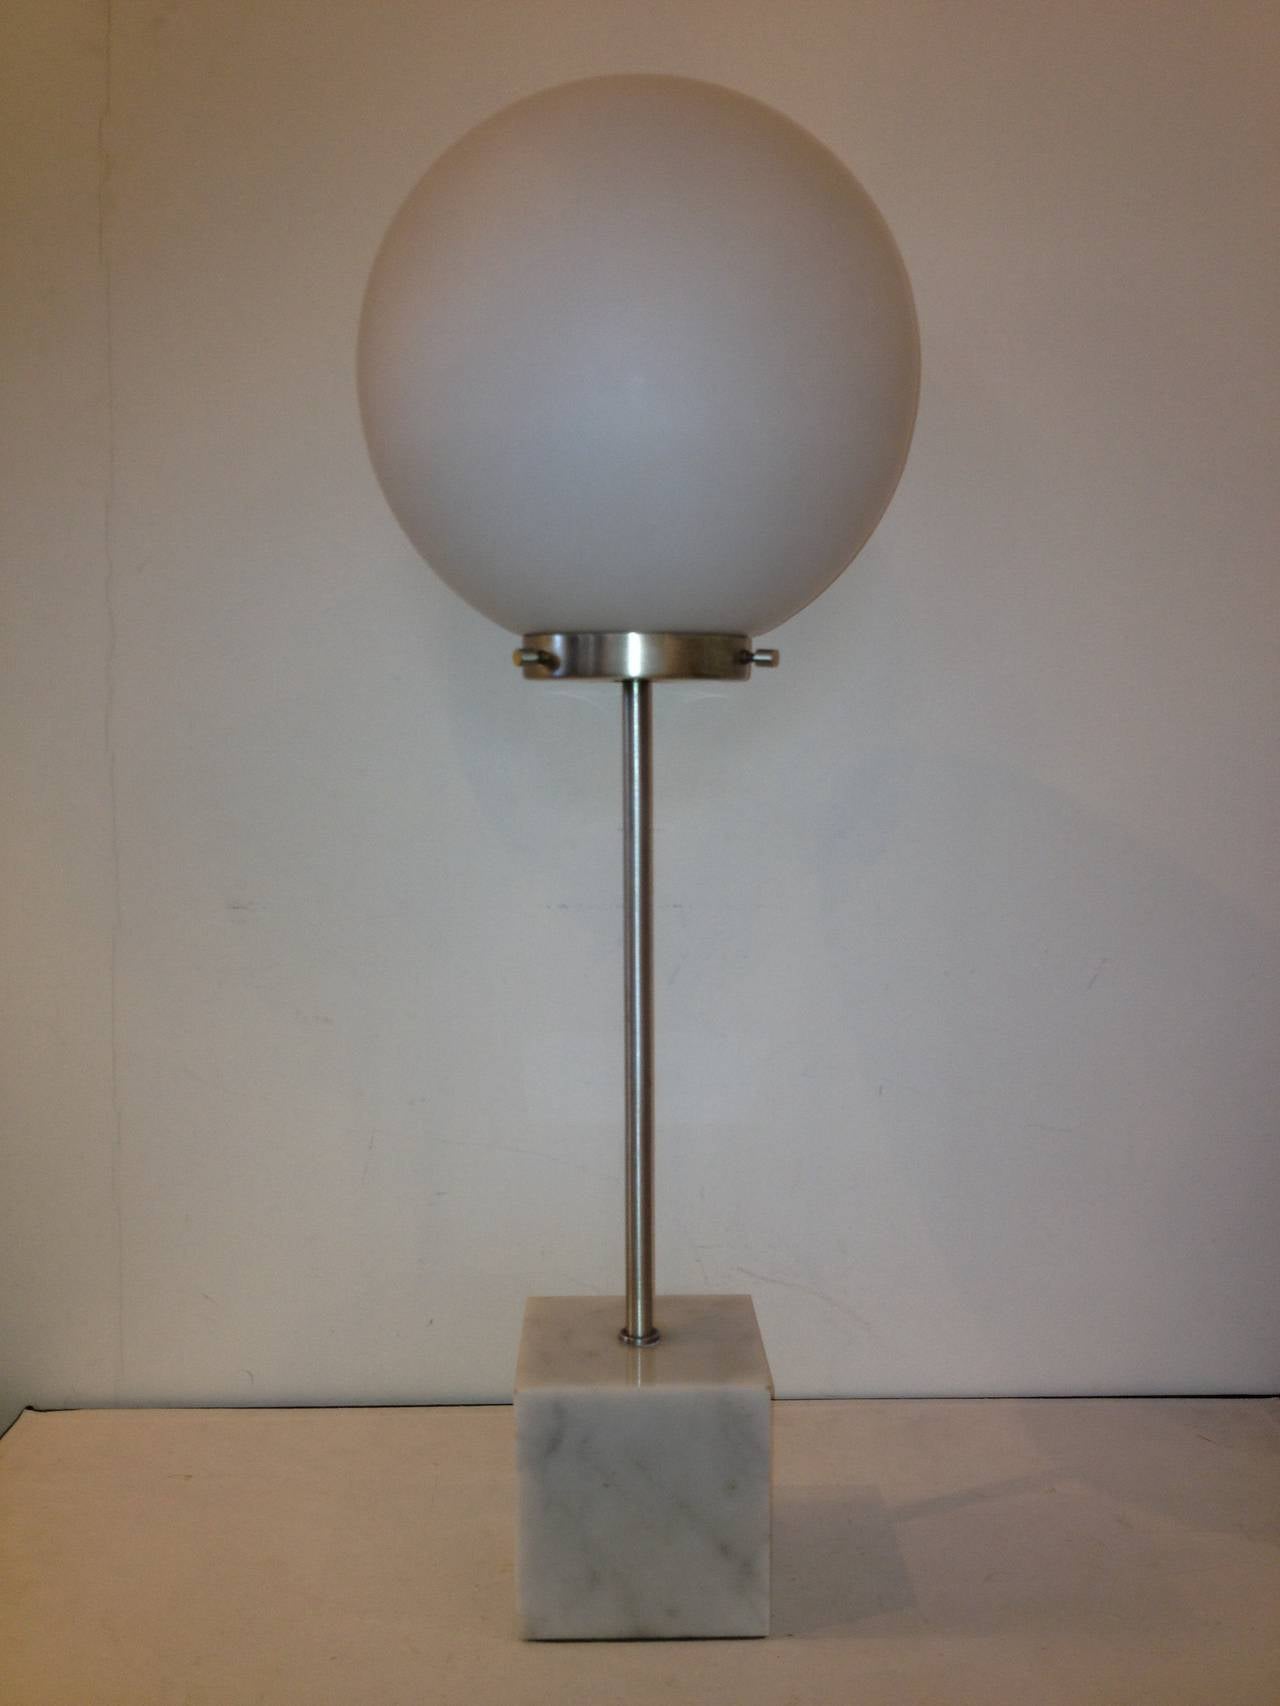 Paul Mayen Base en marbre acier inoxydable brossé blanc givré Lampe design Globe.